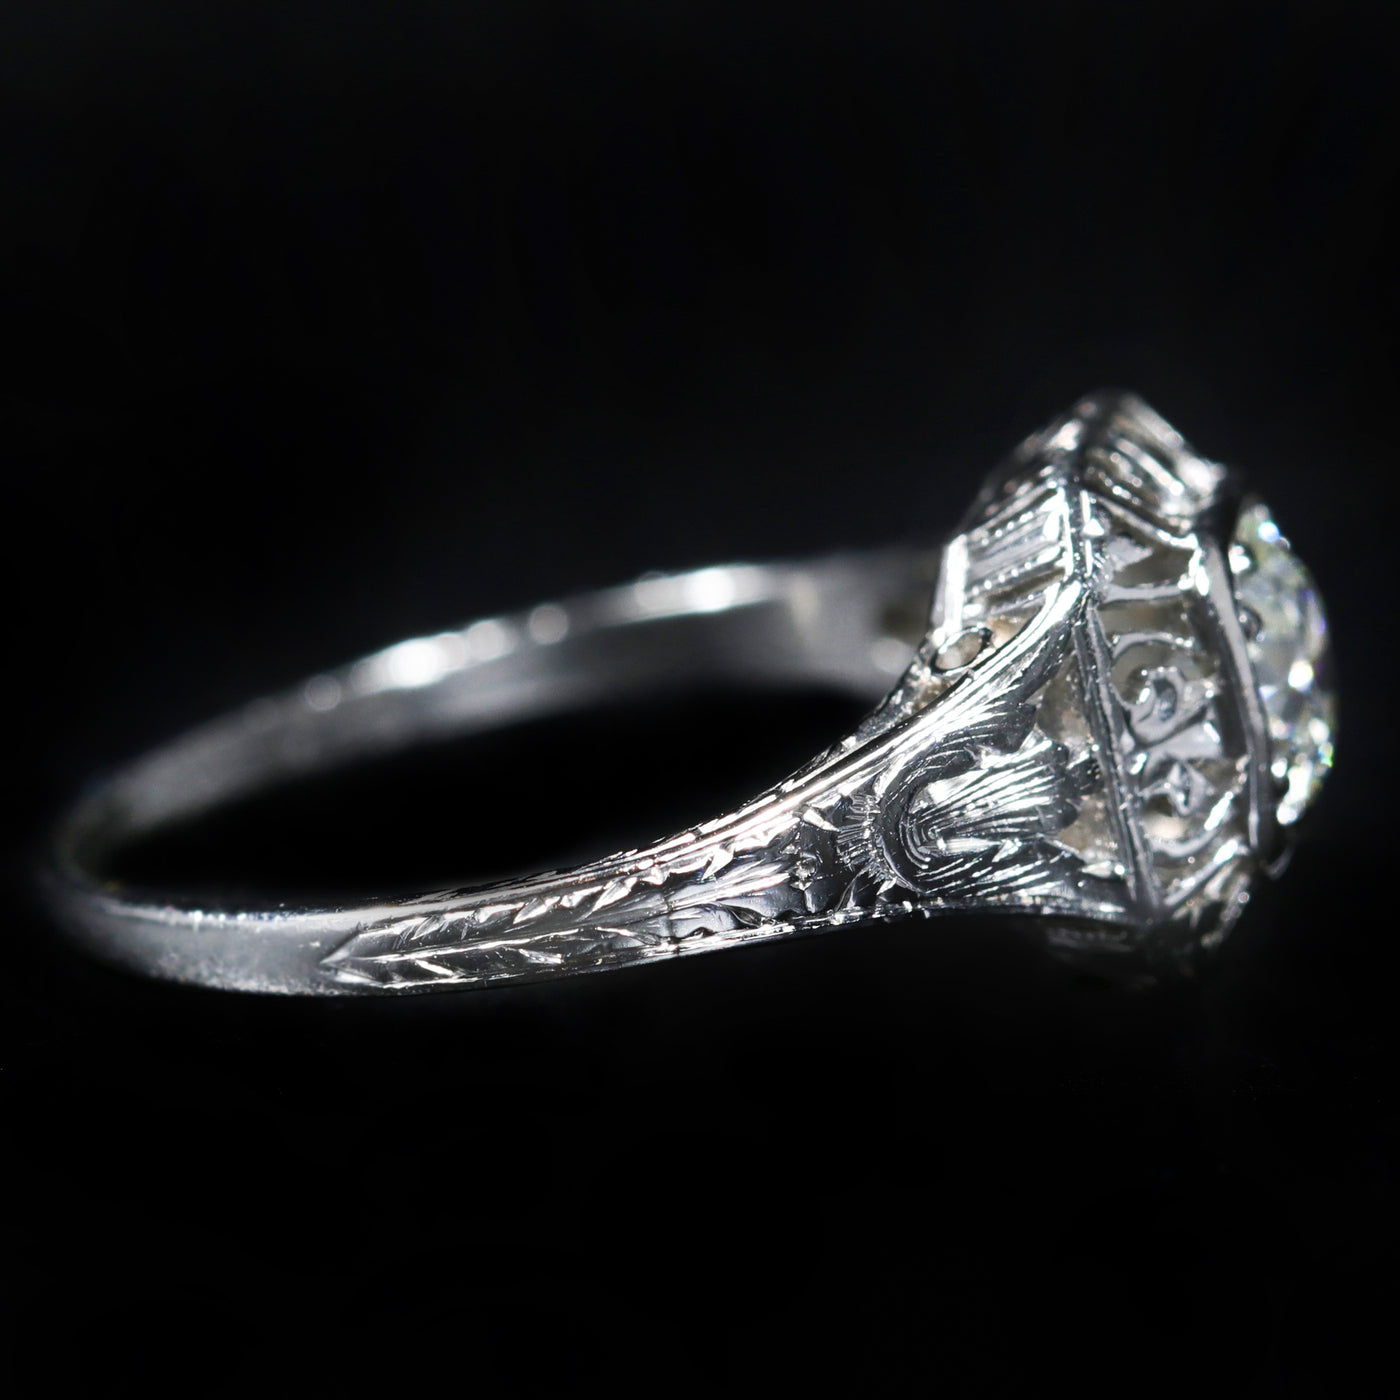 Art Deco Platinum 0.55 Carat Old European Cut Diamond Ring